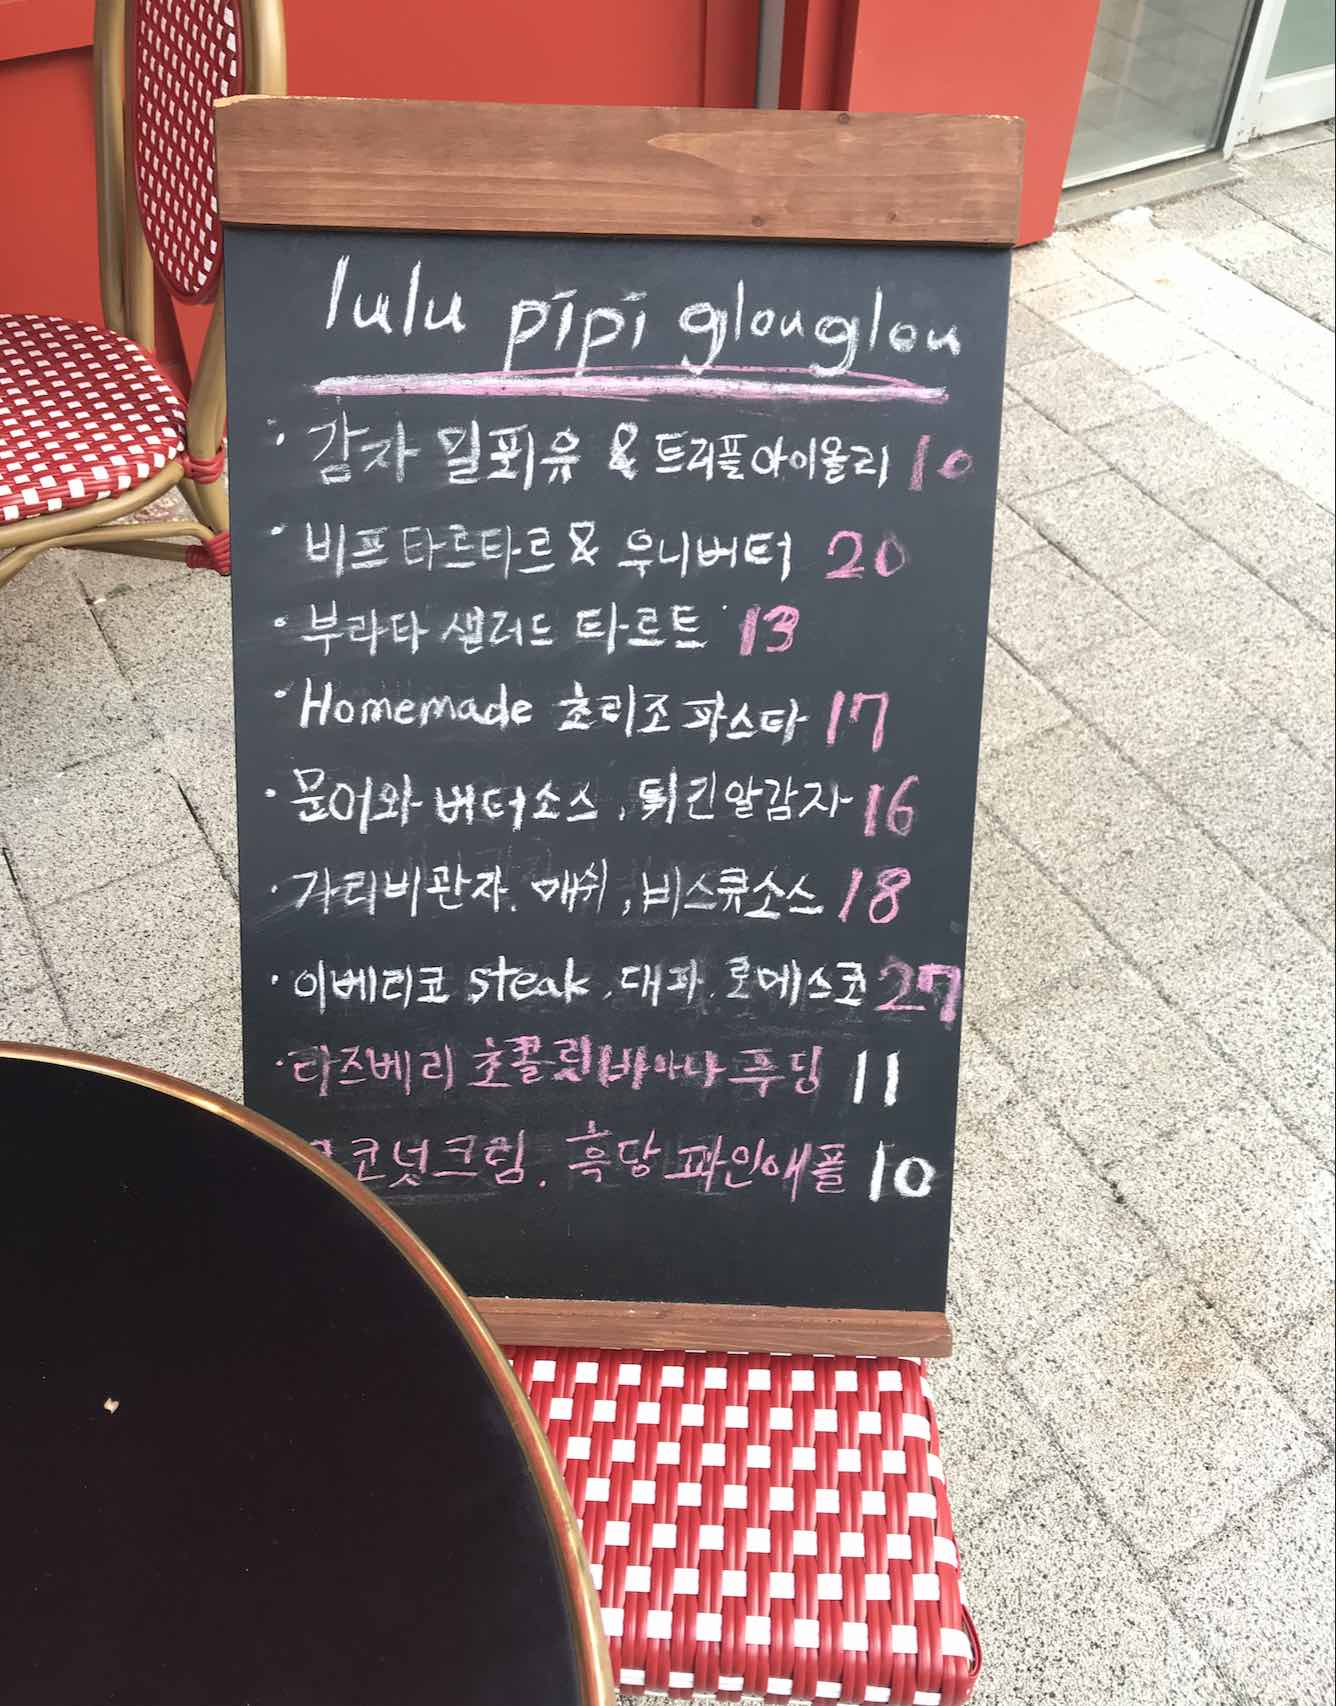 French food menu in Korean